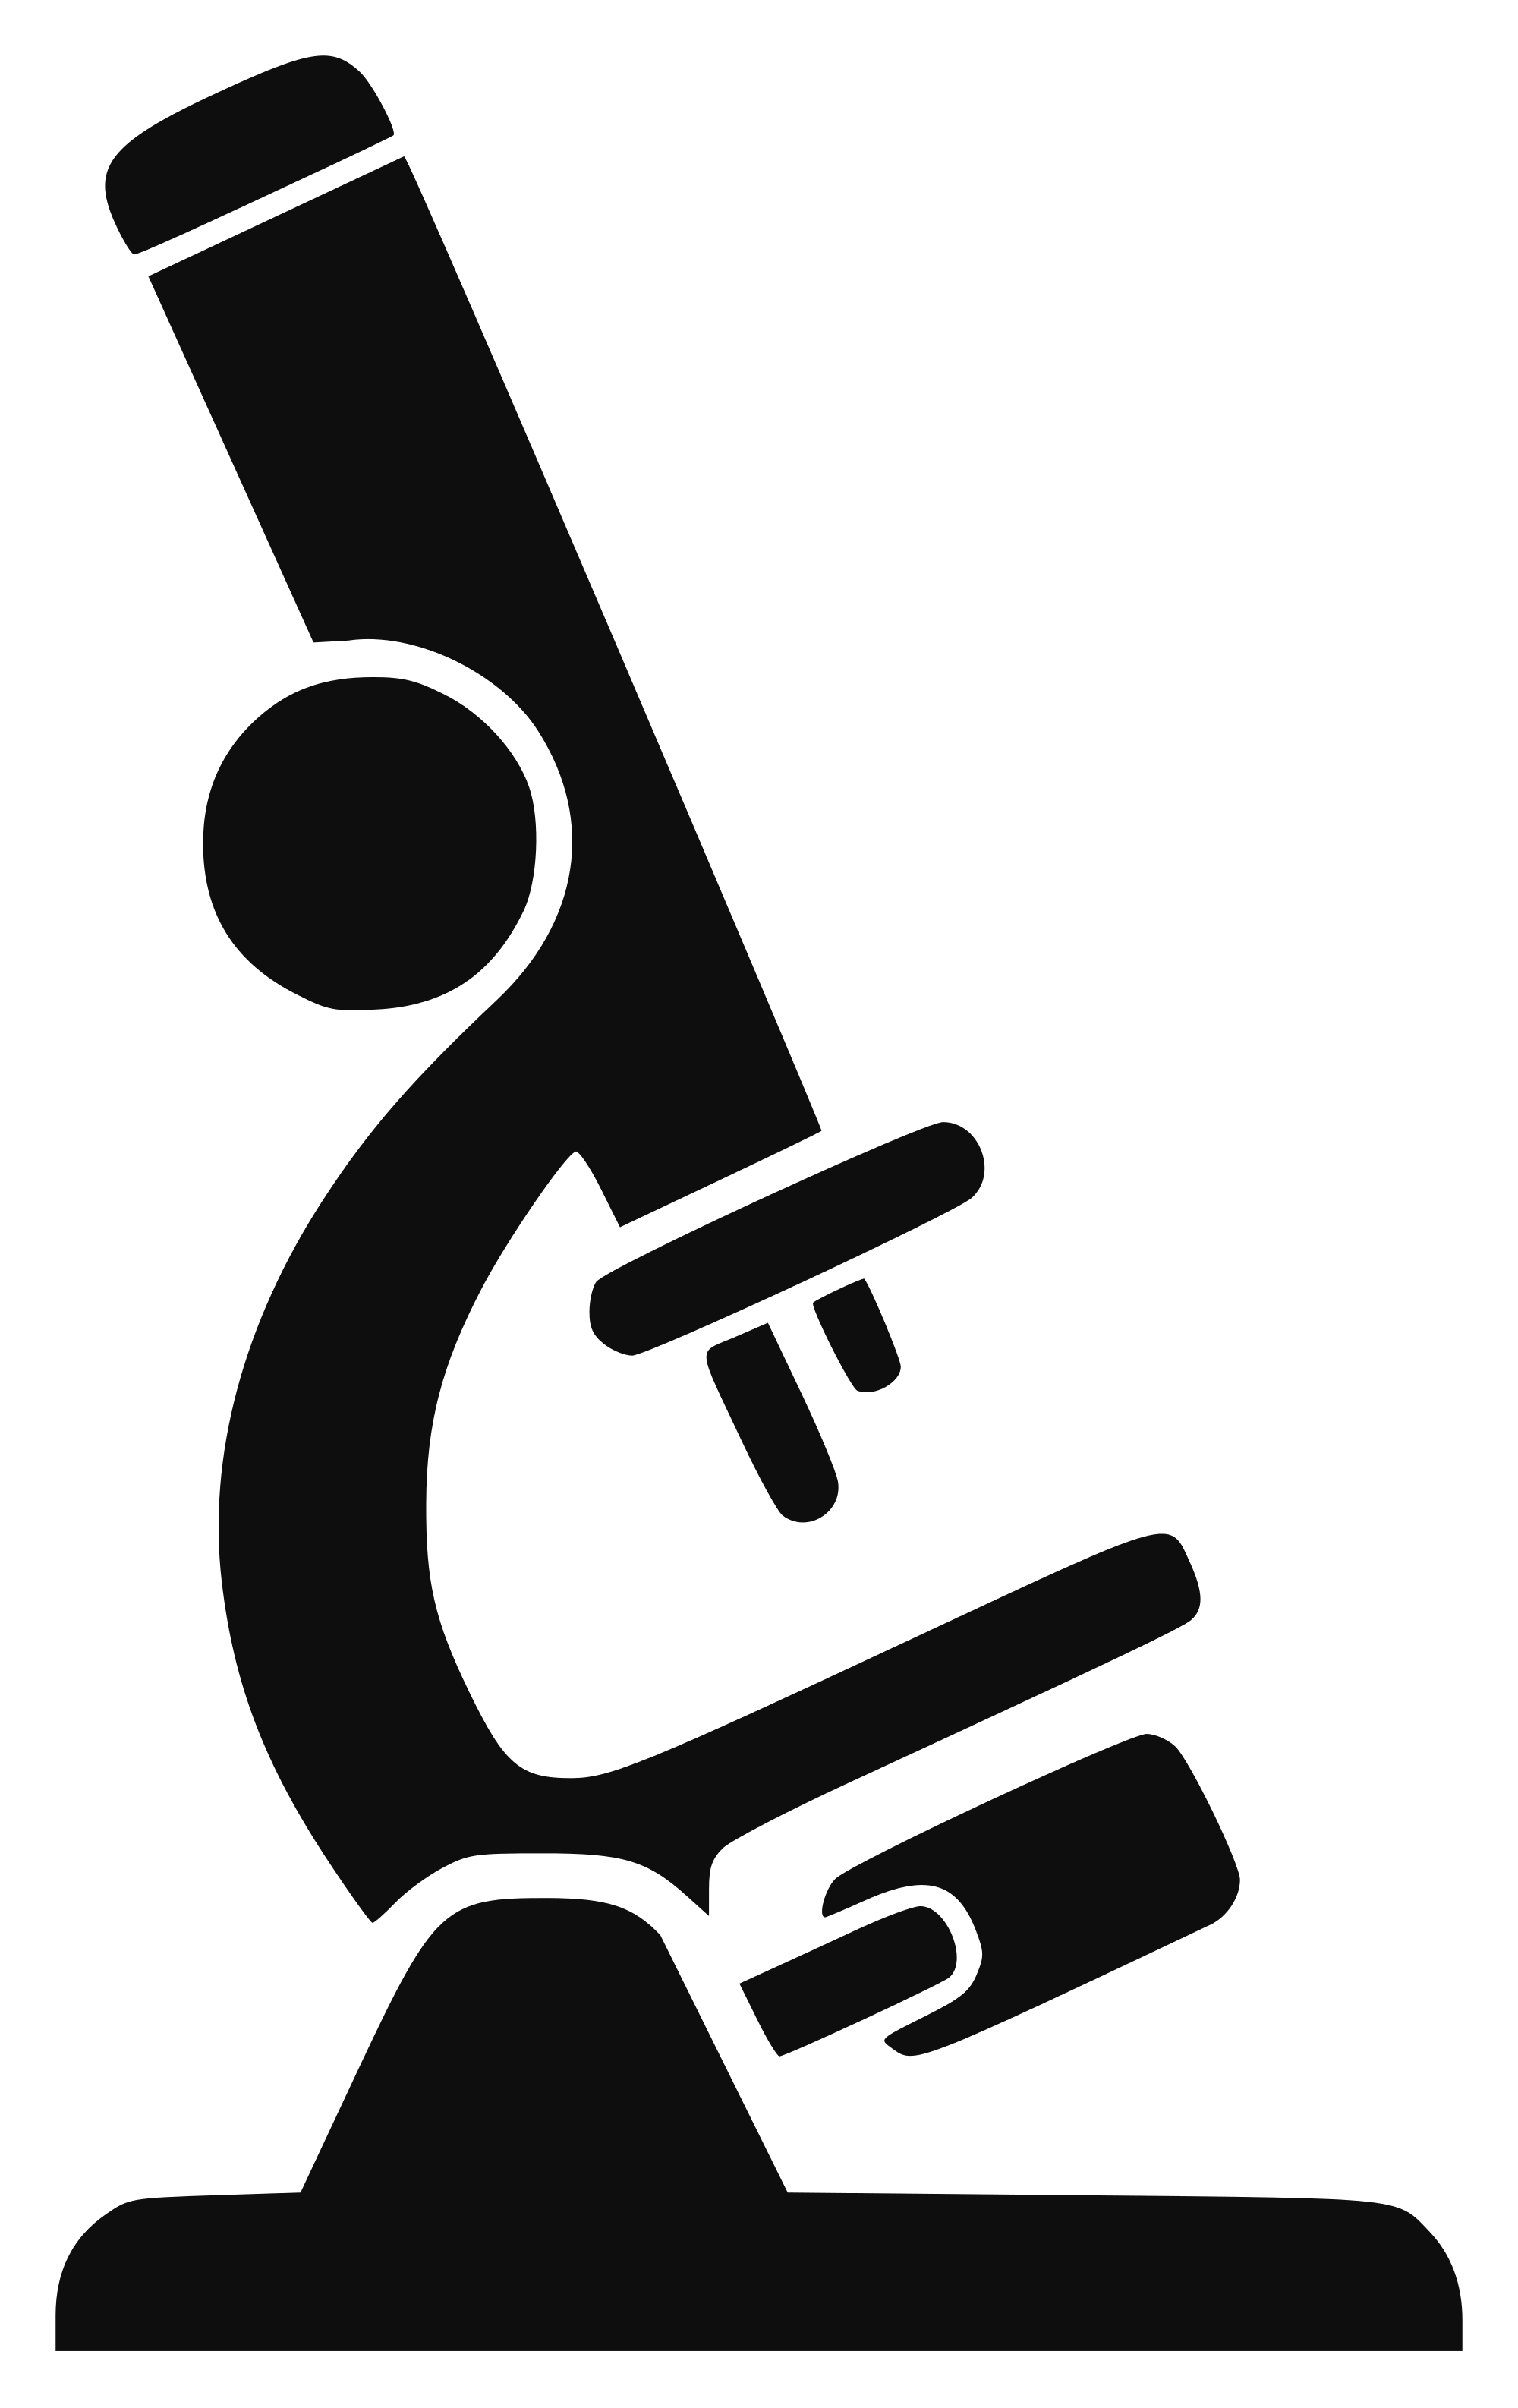 File microscope icon black. Scientist clipart typical